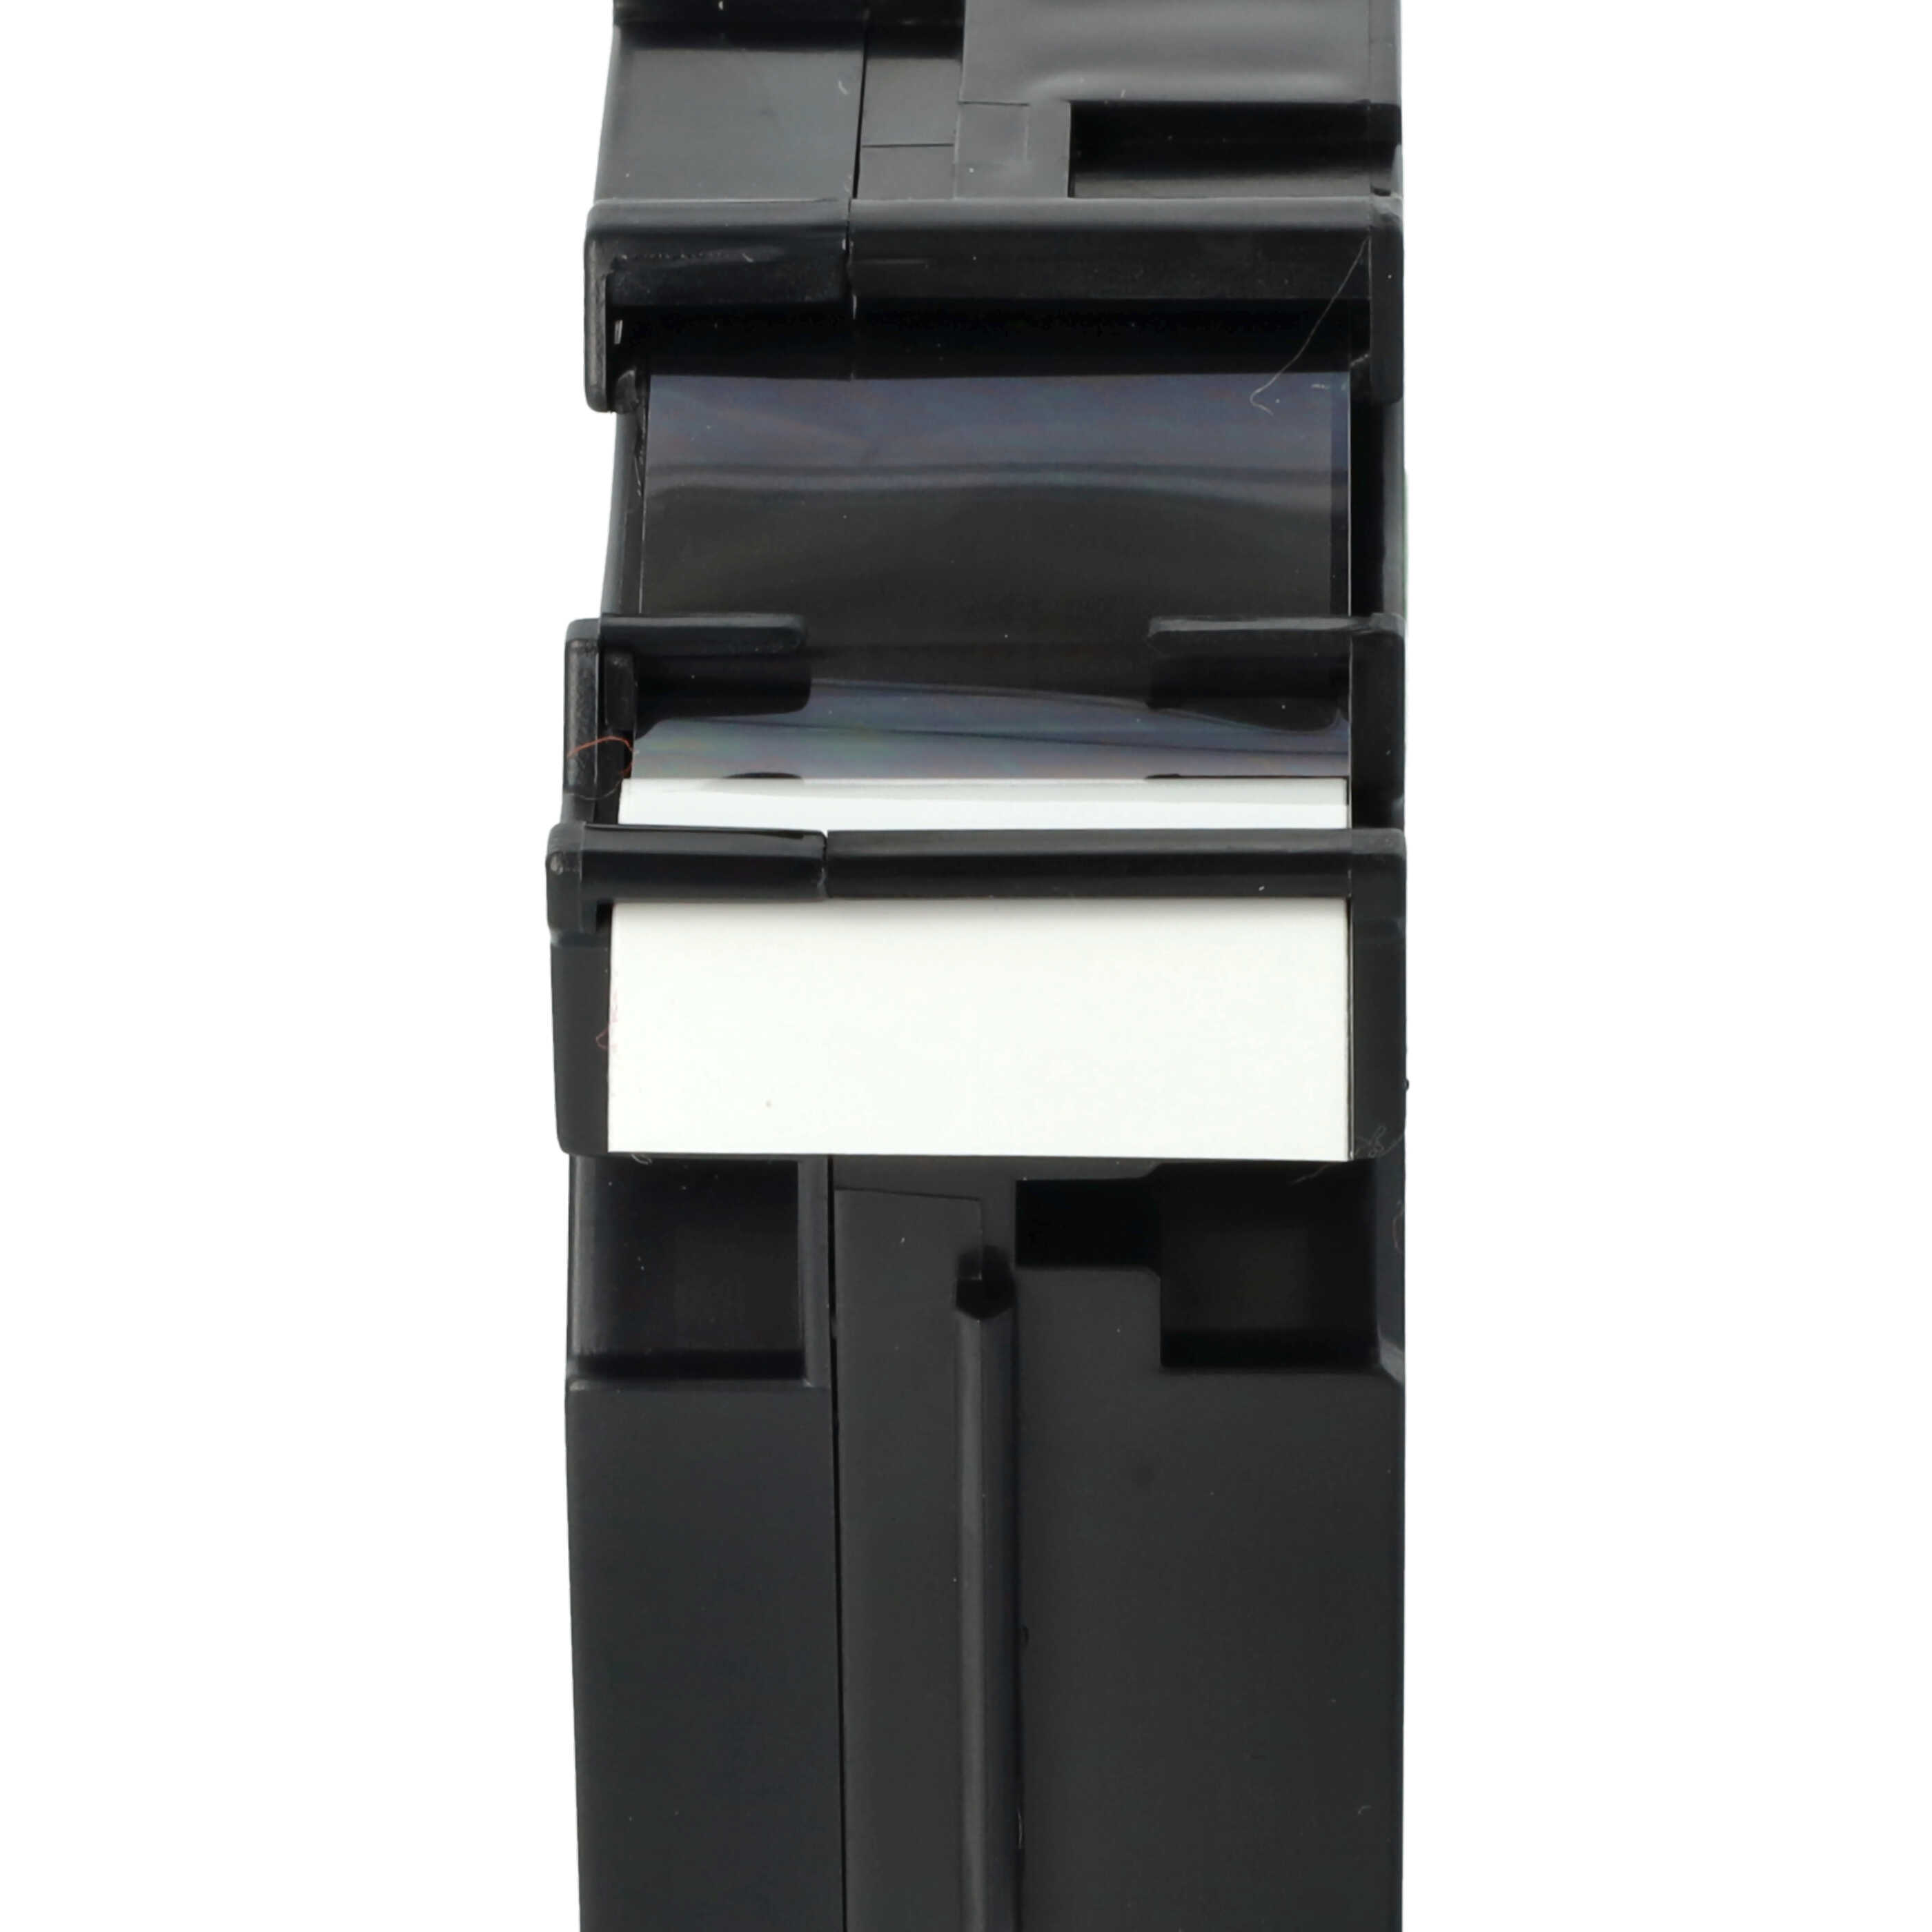 5x Cassetta nastro sostituisce Brother TZE-251, TZ-251 per etichettatrice Brother 24mm nero su bianco